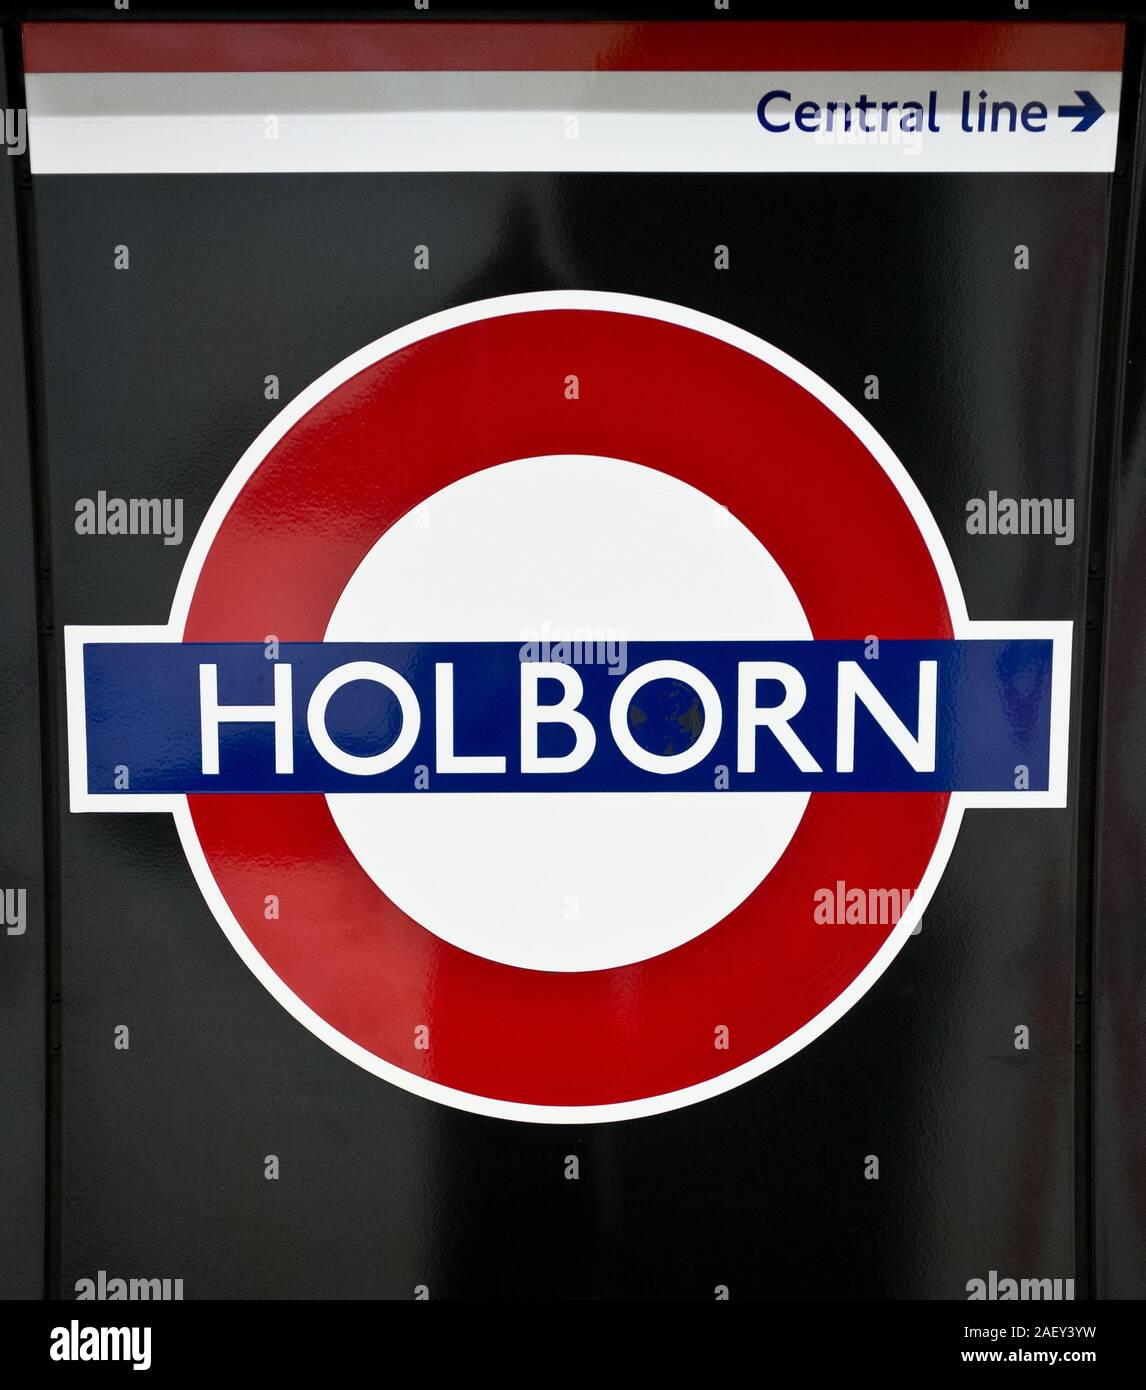 La station de métro Holborn. Le signe pour l'identification de la station de métro de Londres sur une plate-forme à Holborn Station sur la ligne Piccadilly. Banque D'Images